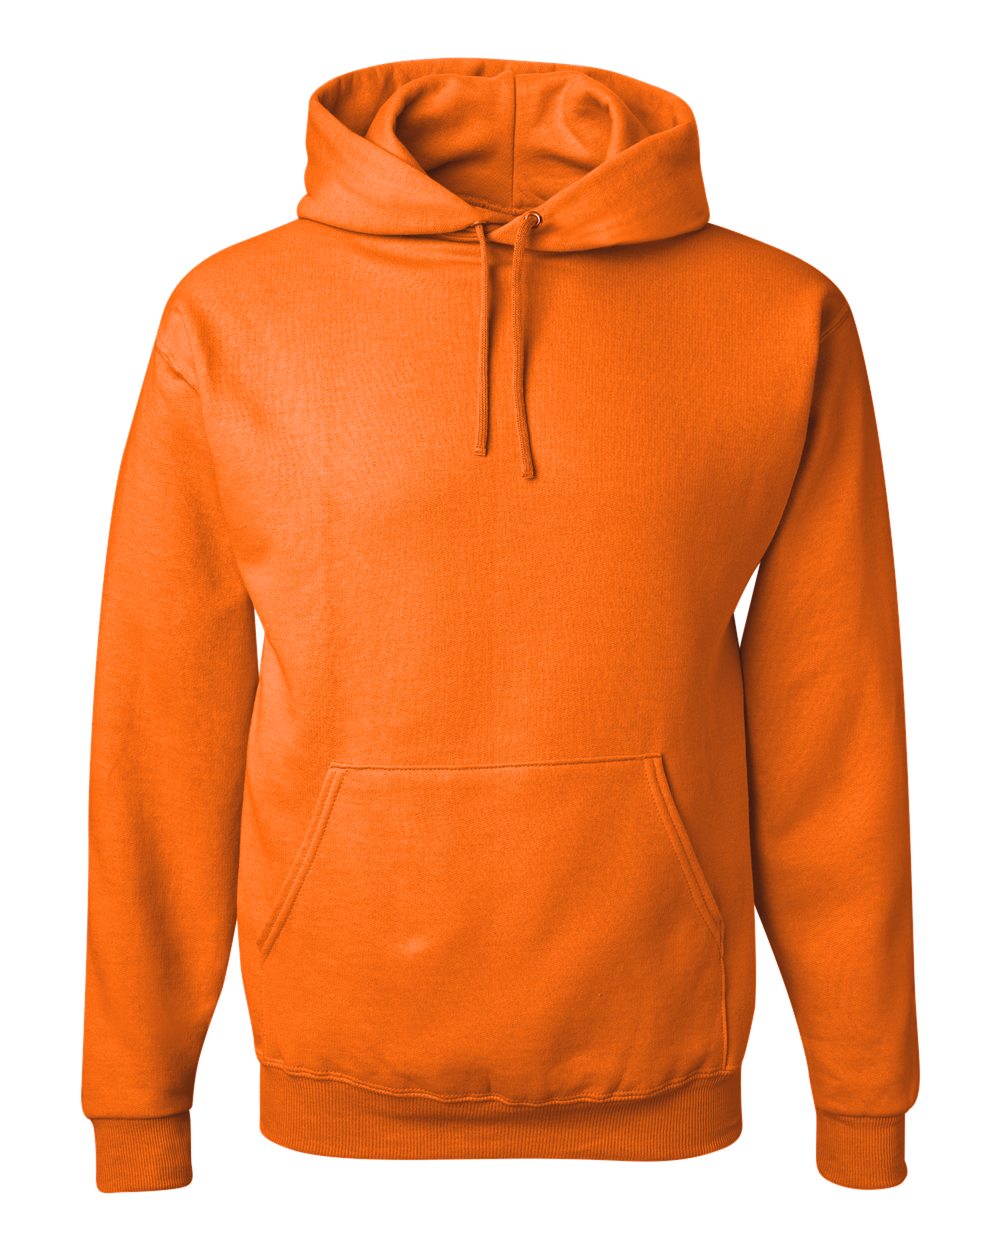 Jerzees Hoodie (996MR) in Safety Orange